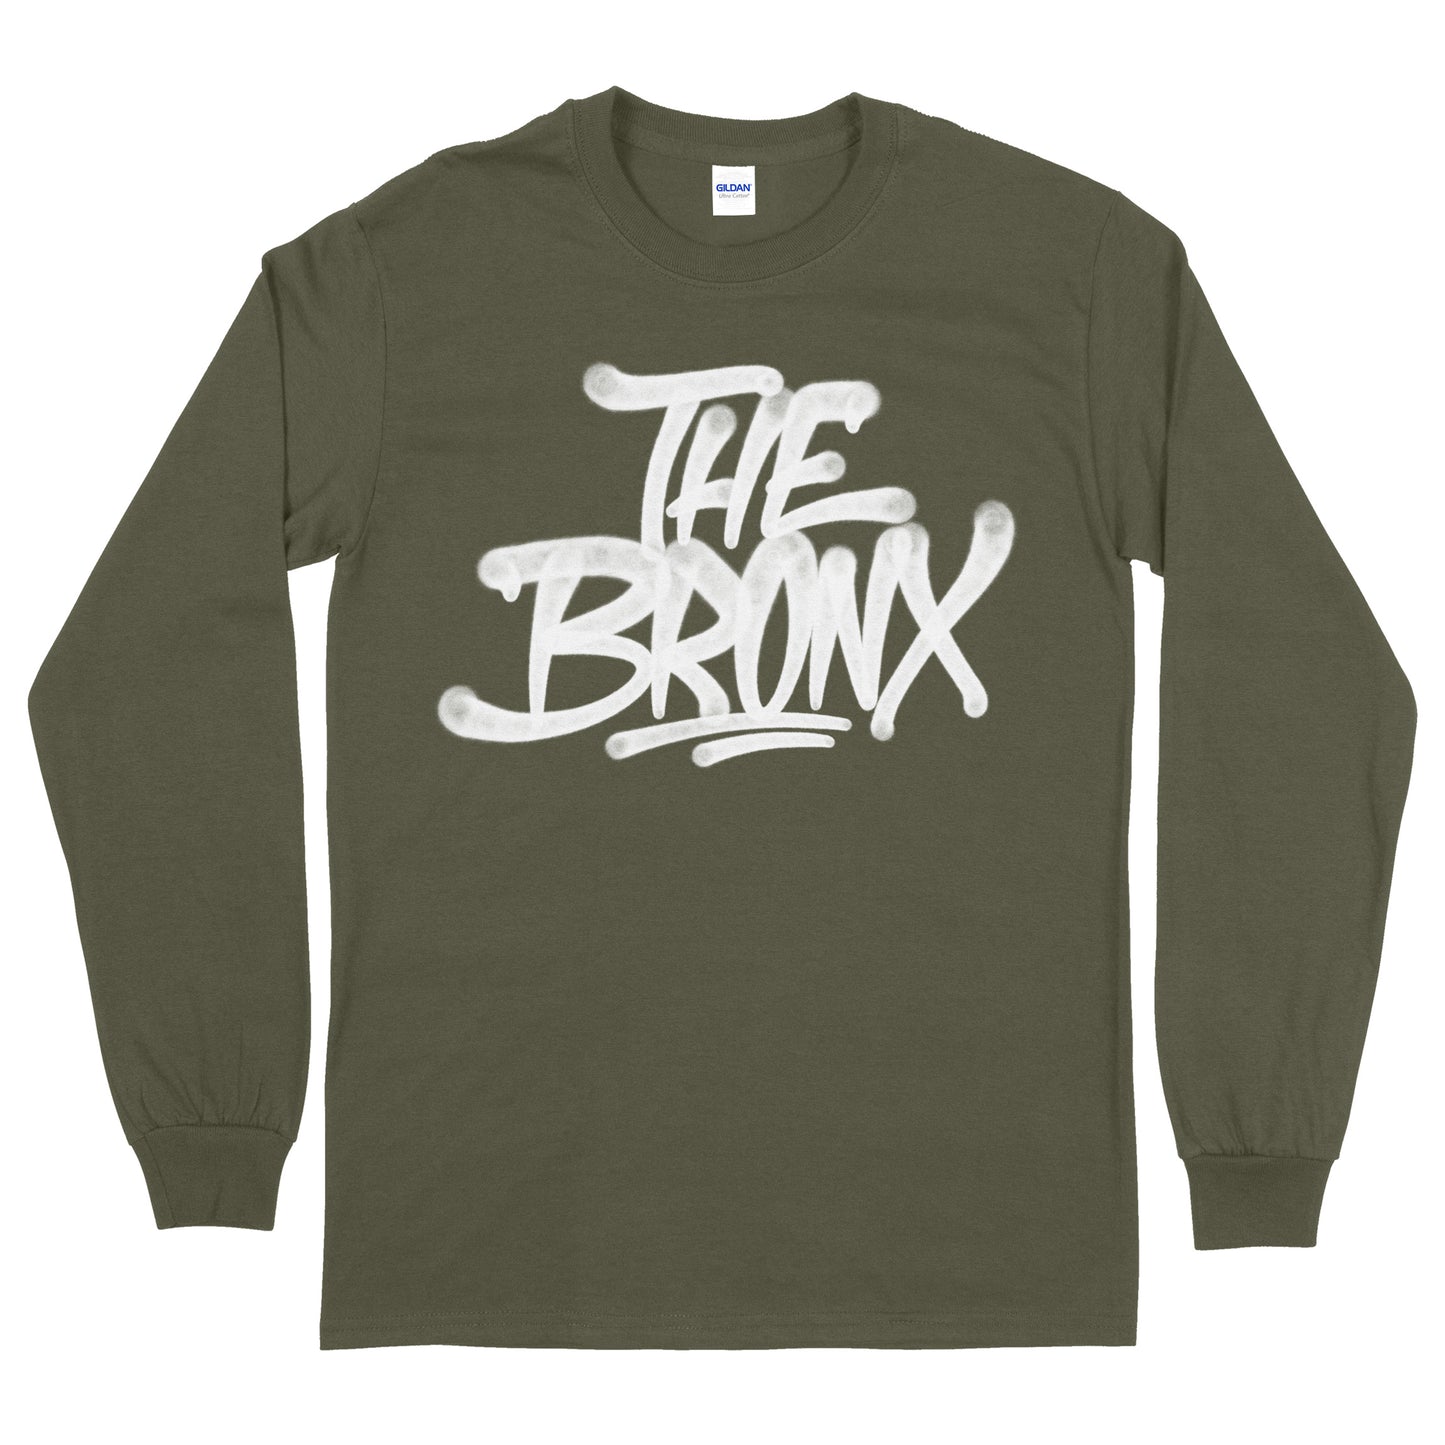 Bronx Handstyle T-shirt